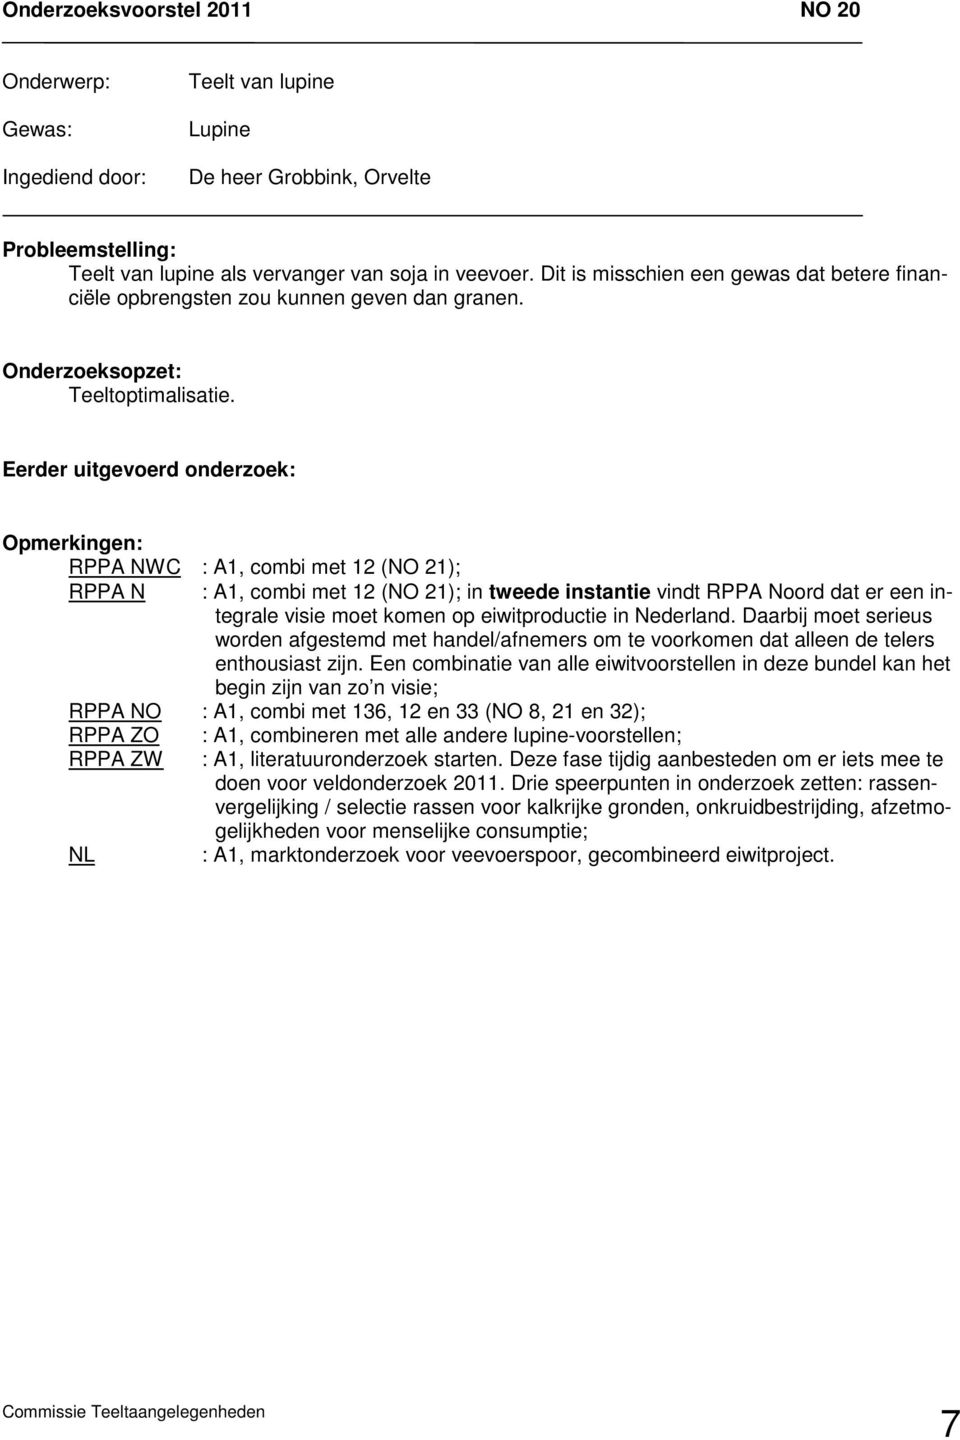 RPPA NWC : A1, combi met 12 (NO 21); RPPA N : A1, combi met 12 (NO 21); in tweede instantie vindt RPPA Noord dat er een integrale visie moet komen op eiwitproductie in Nederland.